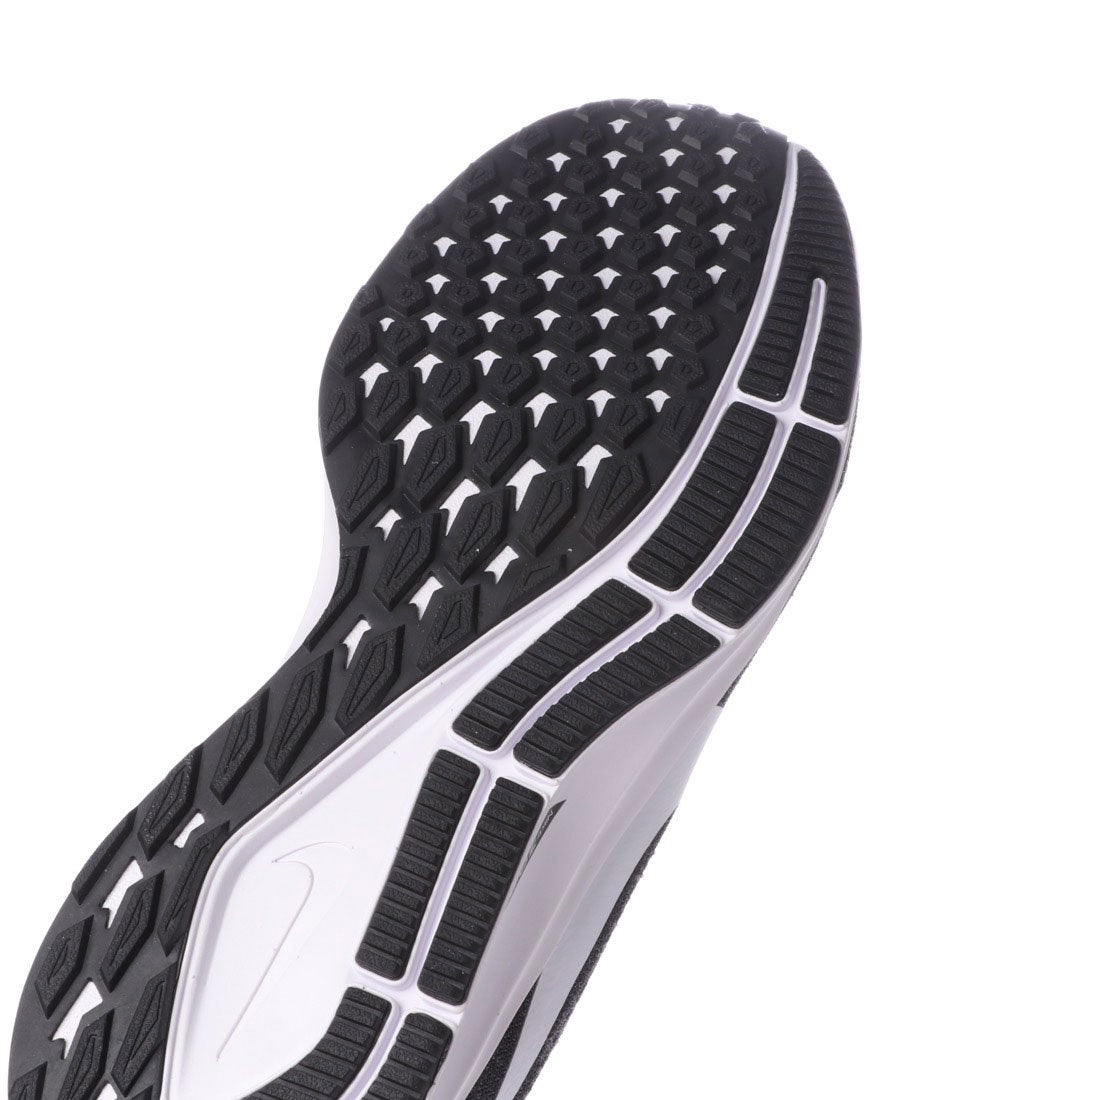 ナイキ Nike メンズ レディース 陸上 ランニング ランニングシューズ ナイキ エア ズーム ペガサス 36 4e Aq25 001 靴 ファッション通販 ロコンド 自宅で試着 気軽に返品